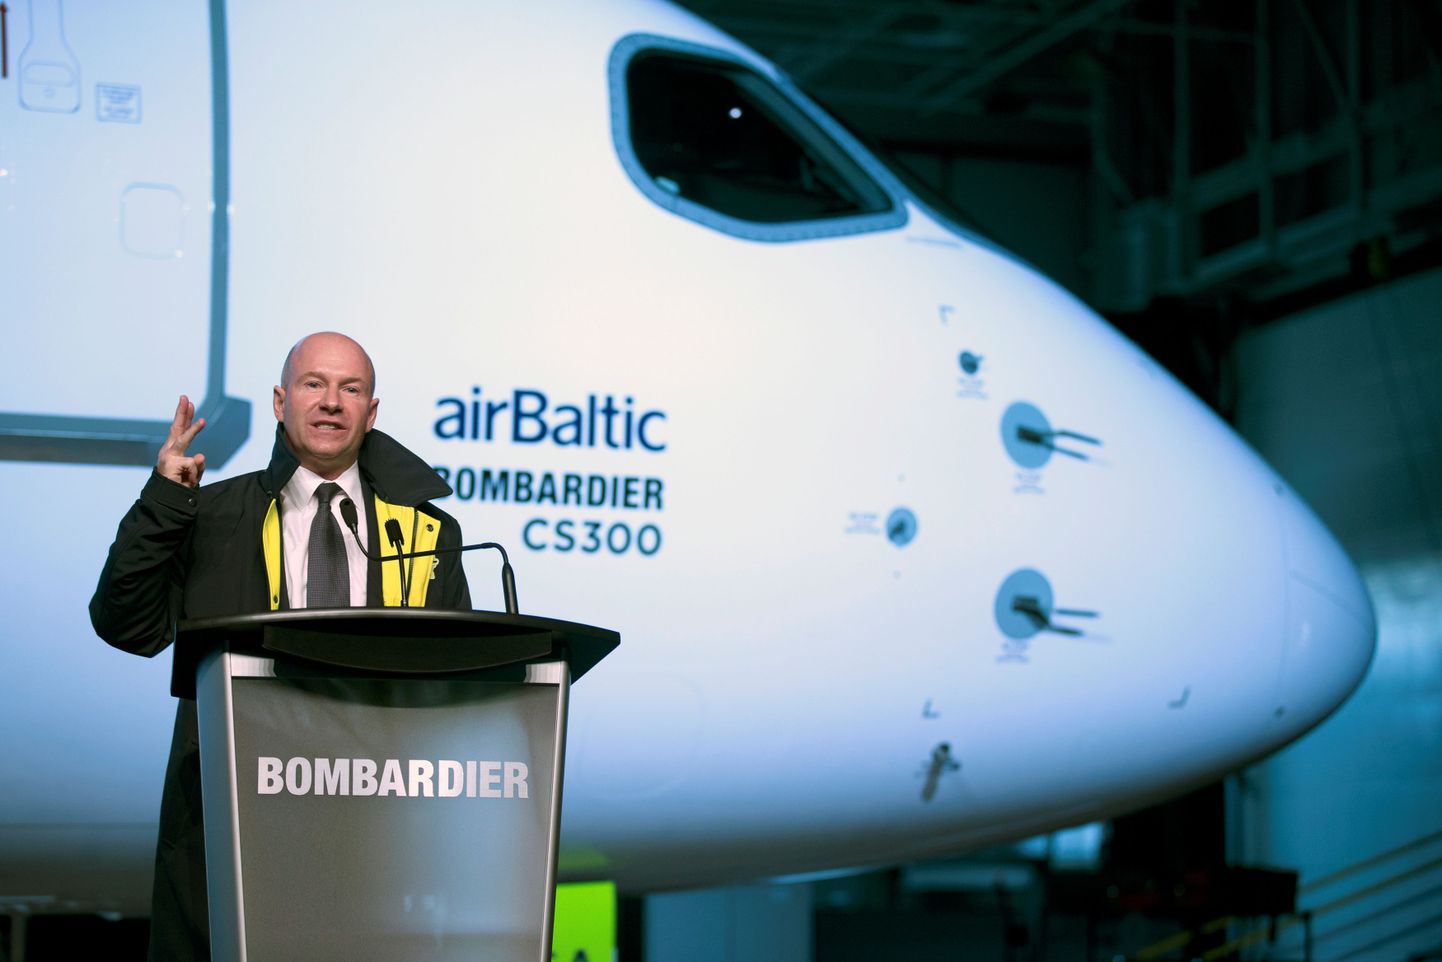 Esimeste Bombardieri lennukite tarne airBalticule 2016. aasta lõpus. Esiplaanil Bombardieri tegevjuht Alain Bellemare.